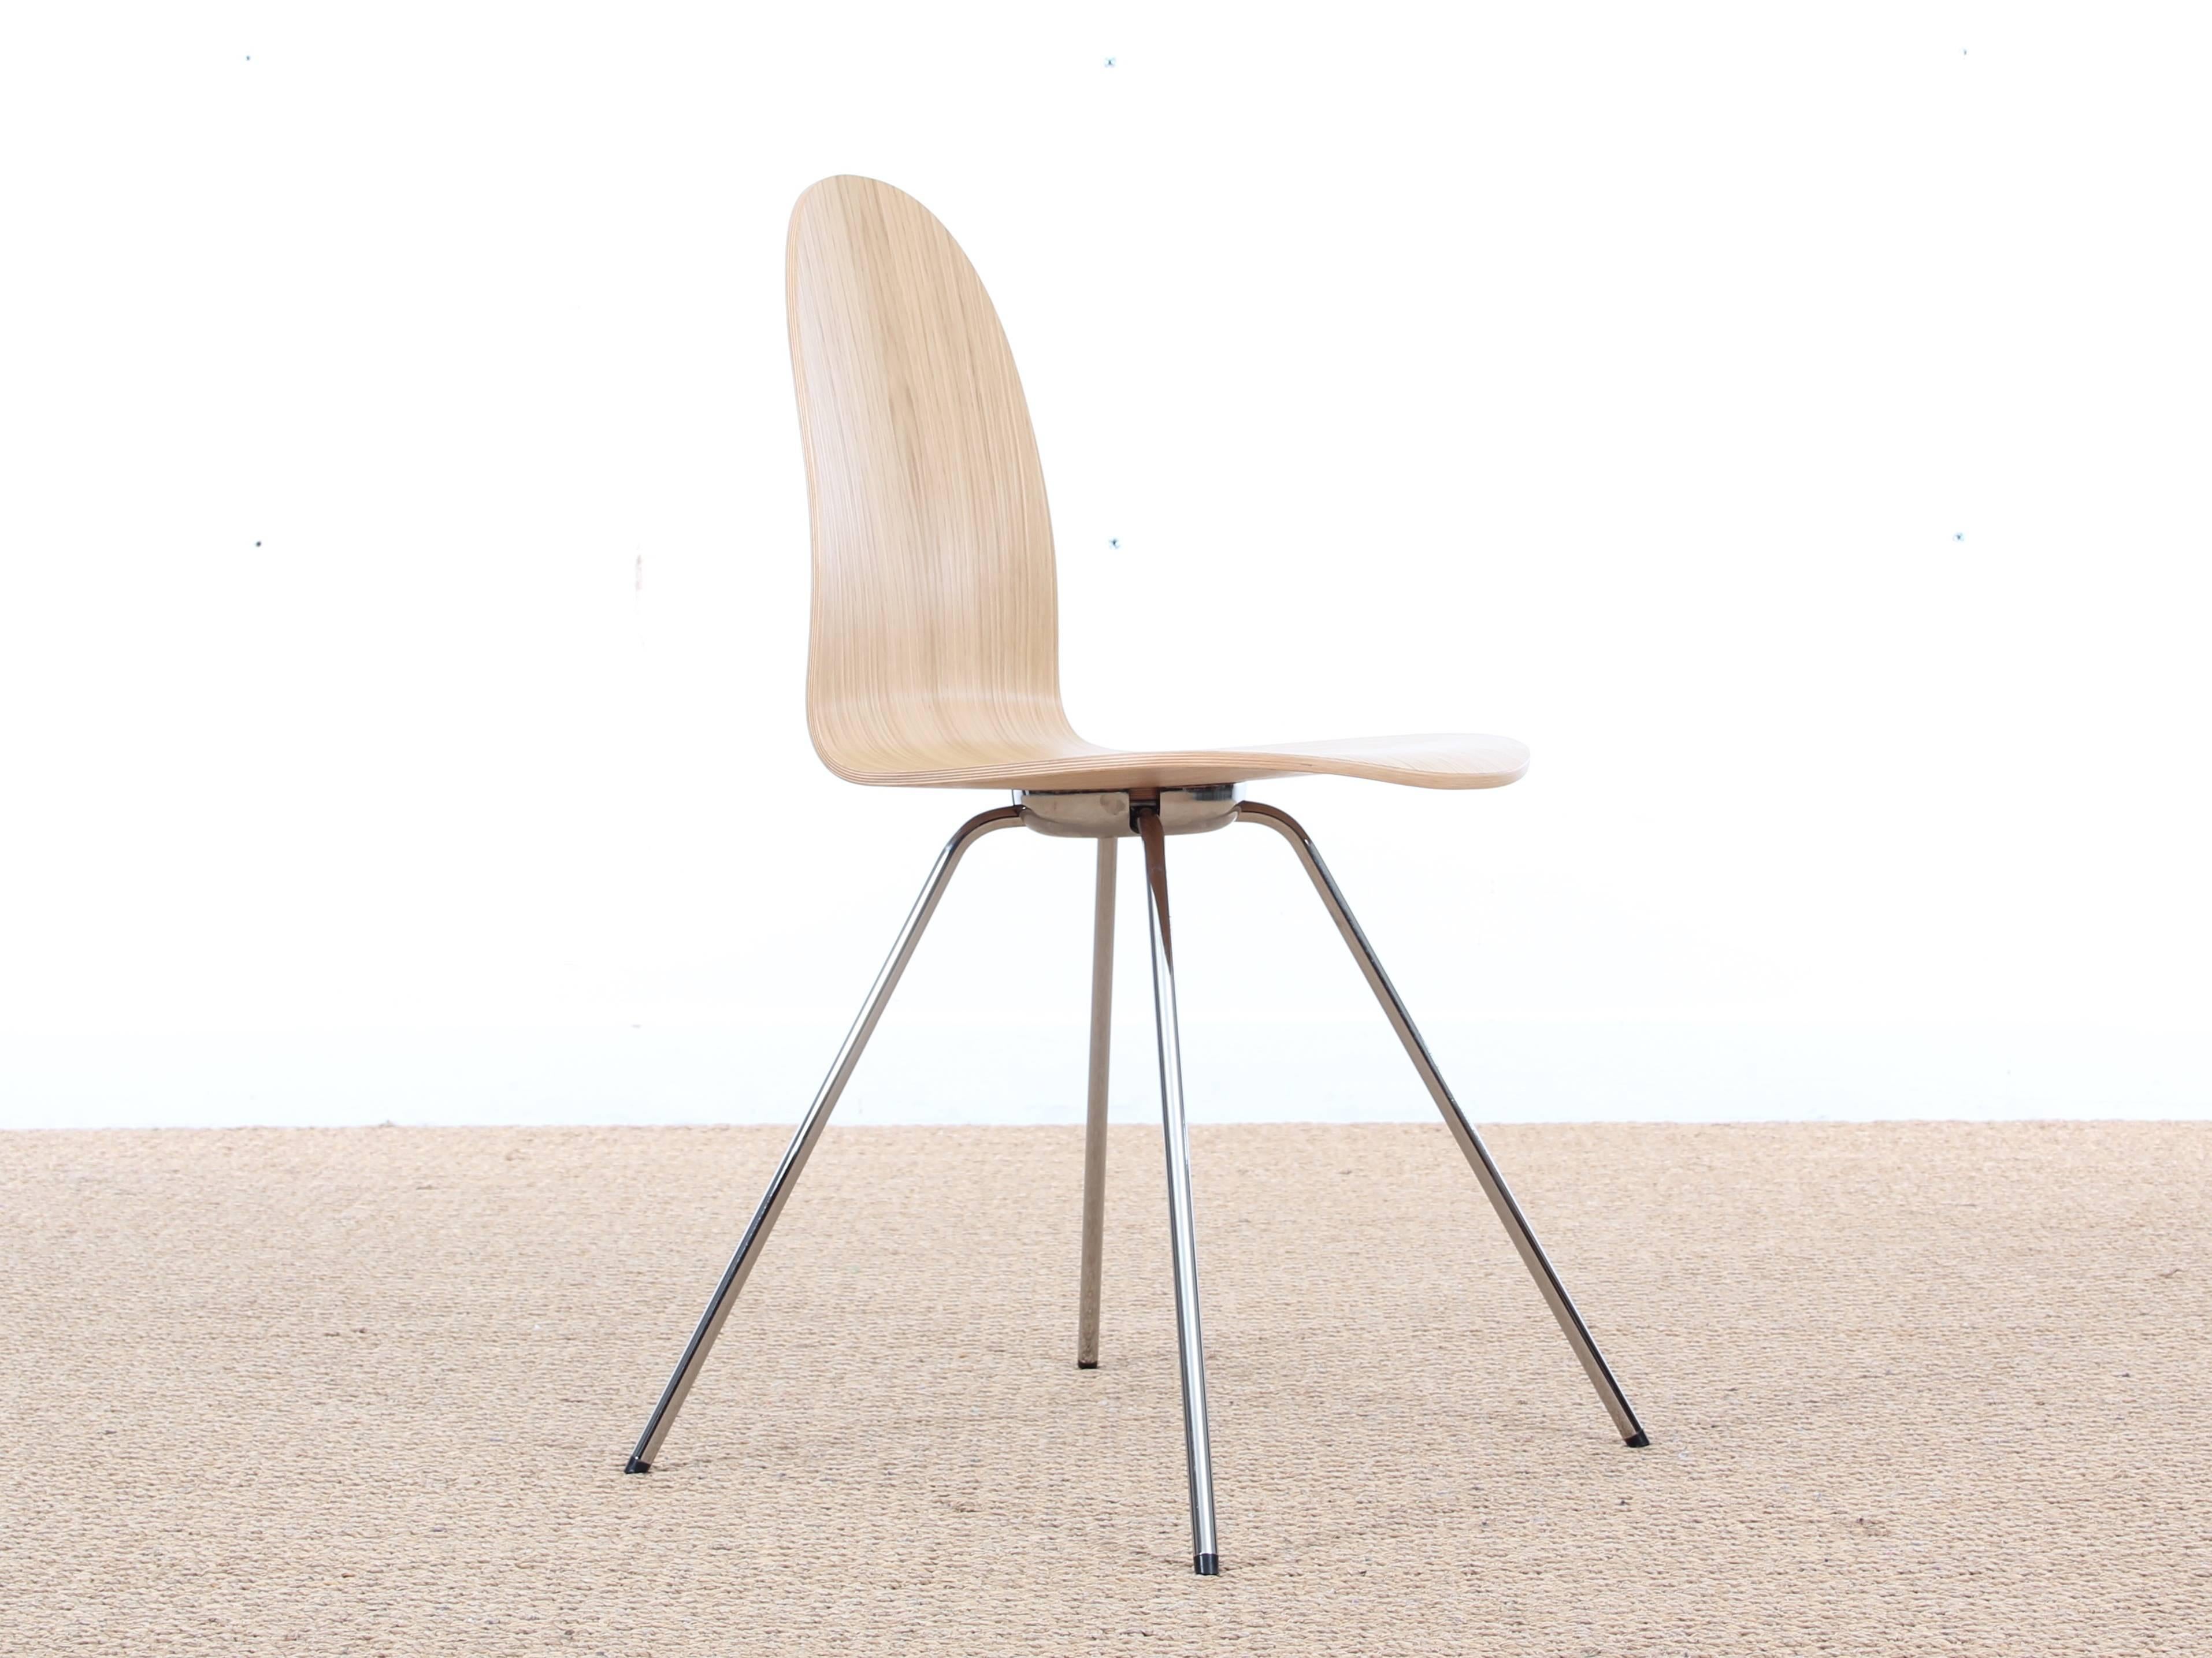 

Der Zungenstuhl ist ein Klassiker von Arne Jacobsen. Die organische Wellenform des Sitzes ist sofort erkennbar und wird durch die sehr skulpturalen und gespreizten Beine ergänzt.

Wir haben uns für diesen reizvollen Stuhl mit